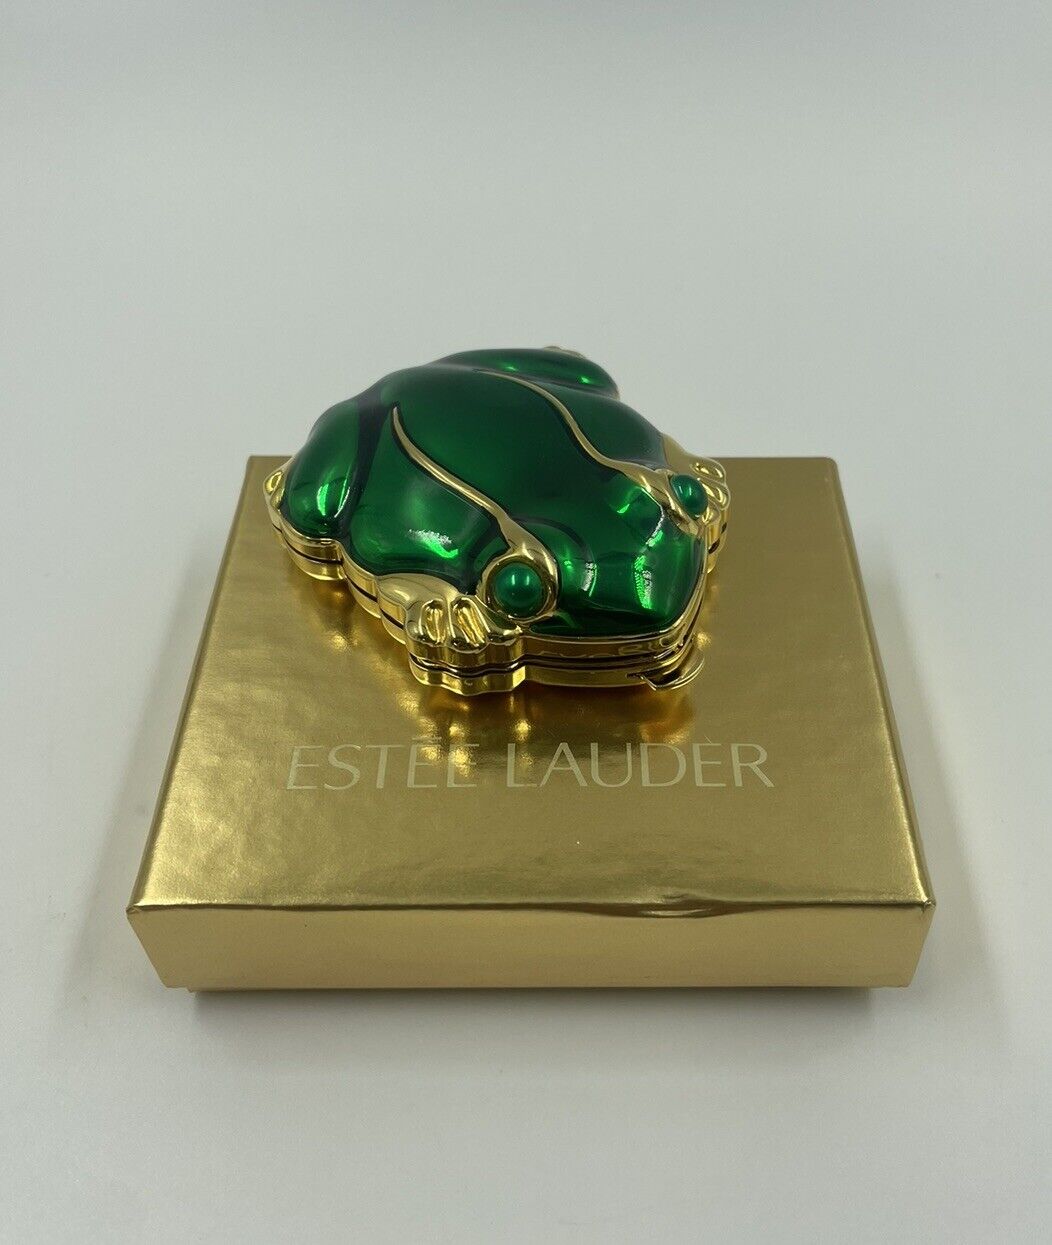 Estee Lauder Frog Compact Pressed Powder Mirror Green Enamel Toad Vintage IOB